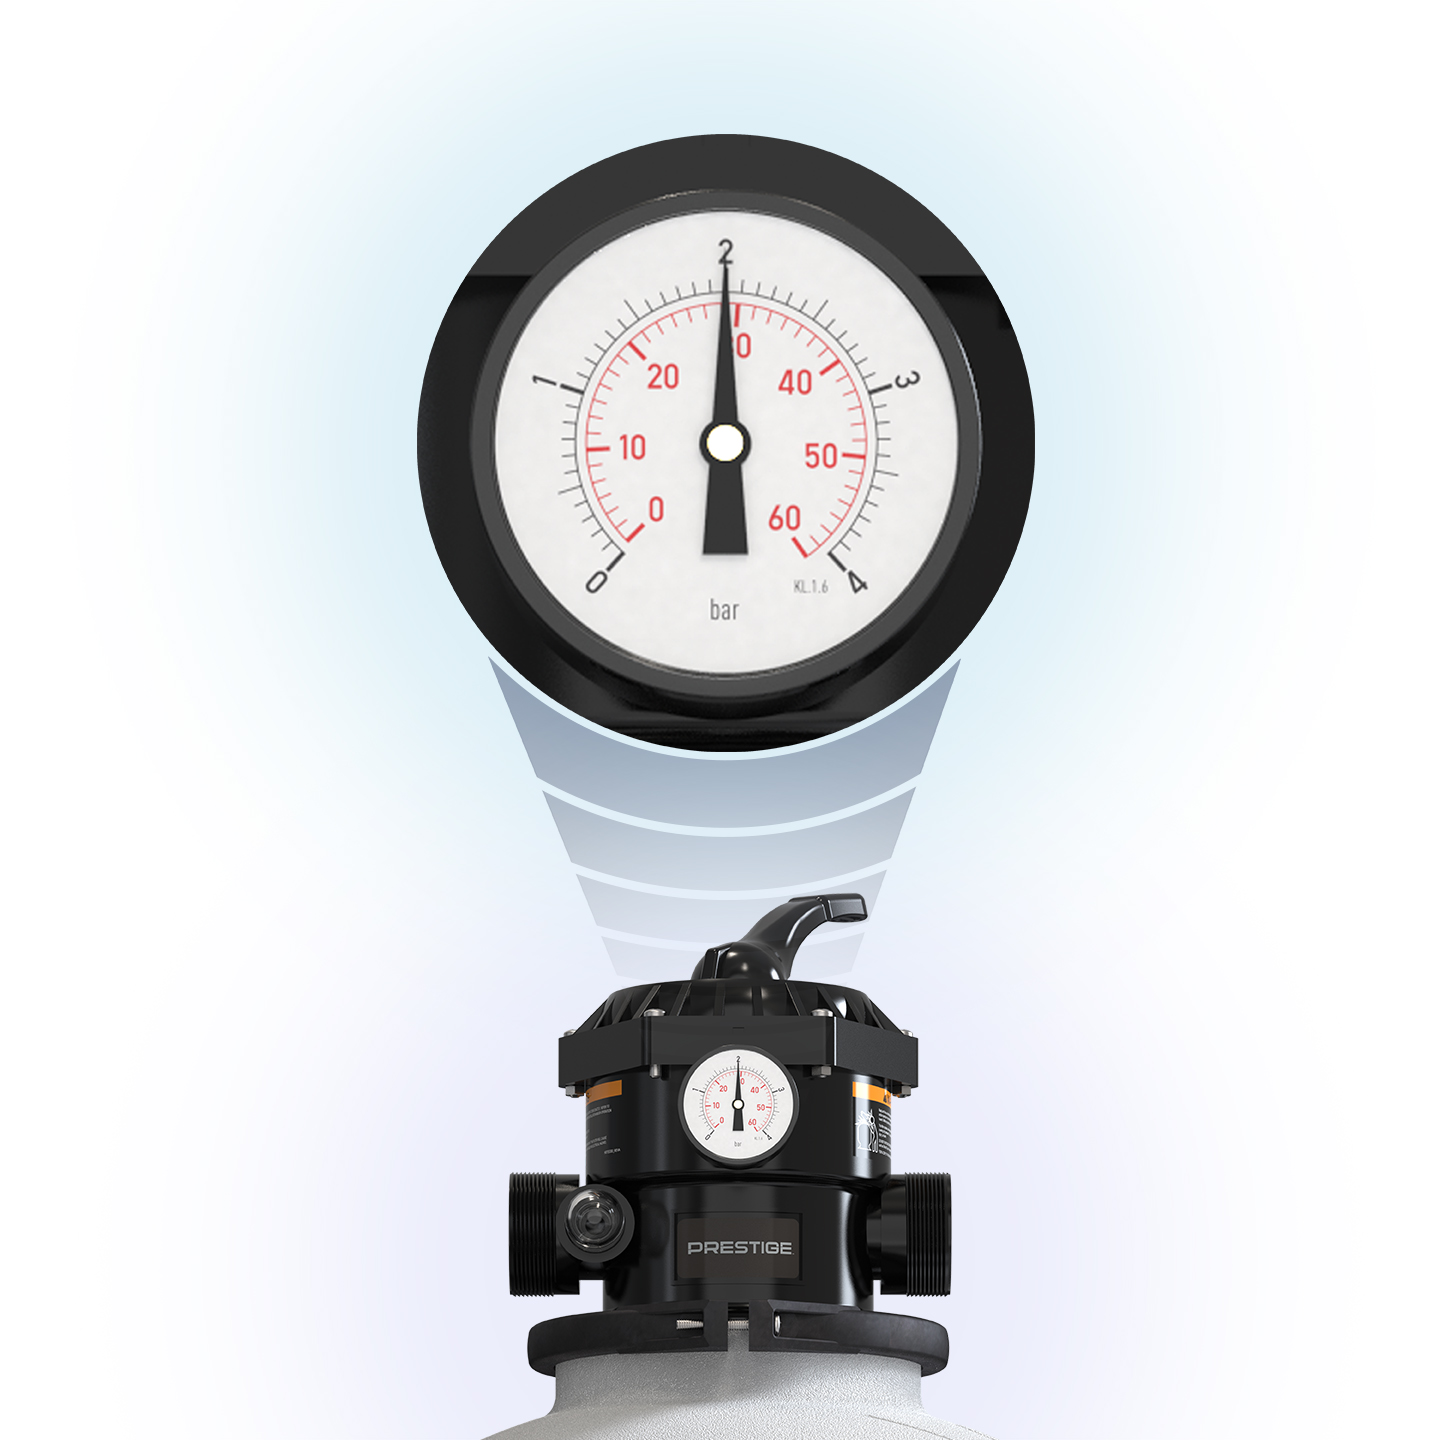 Easy-to-read pressure gauge